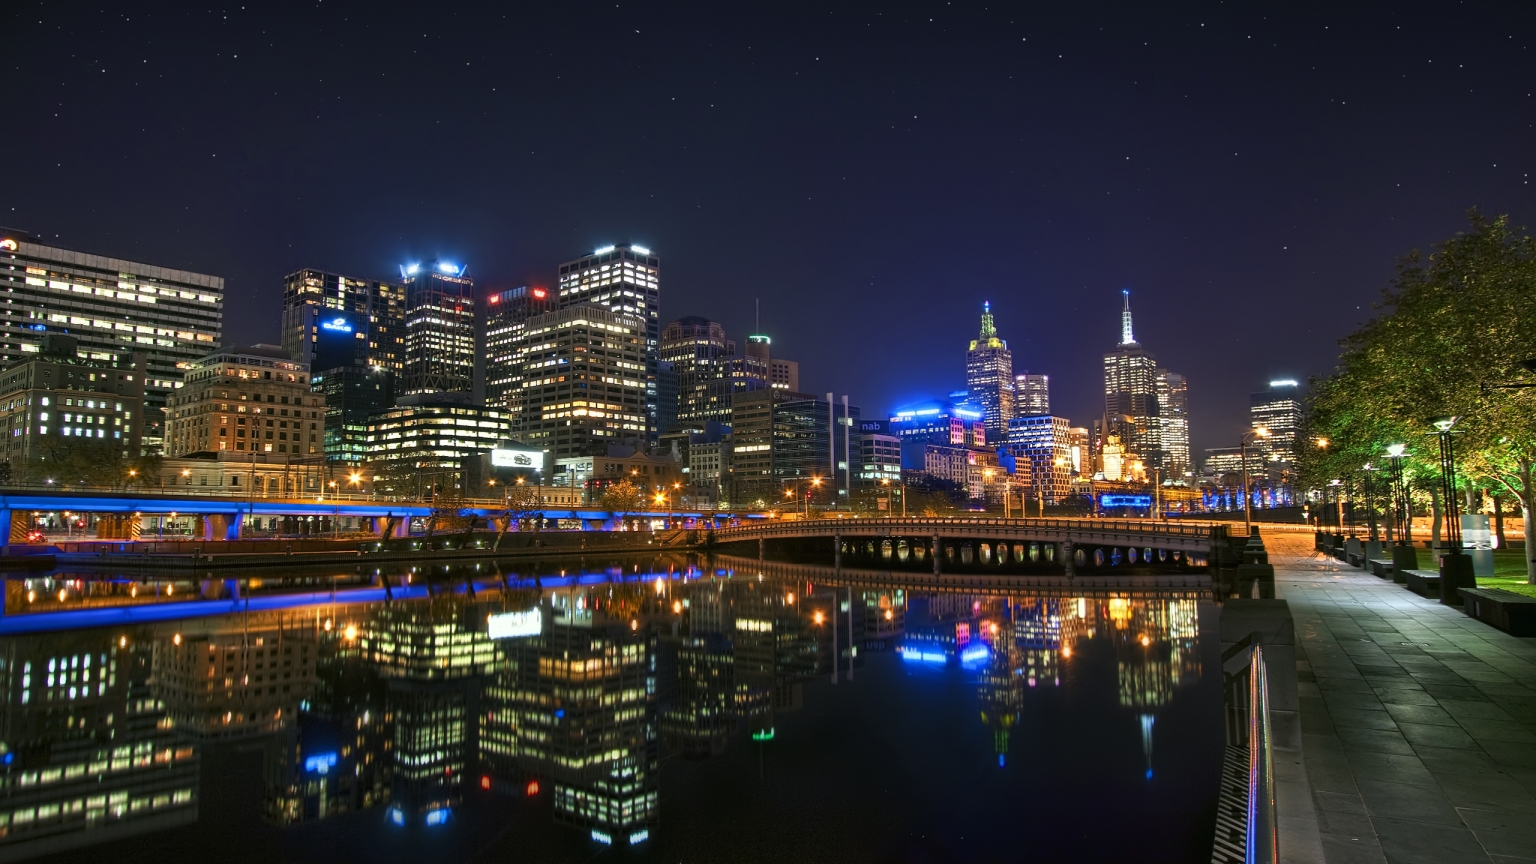 Melbourne Night Landscape for 1536 x 864 HDTV resolution